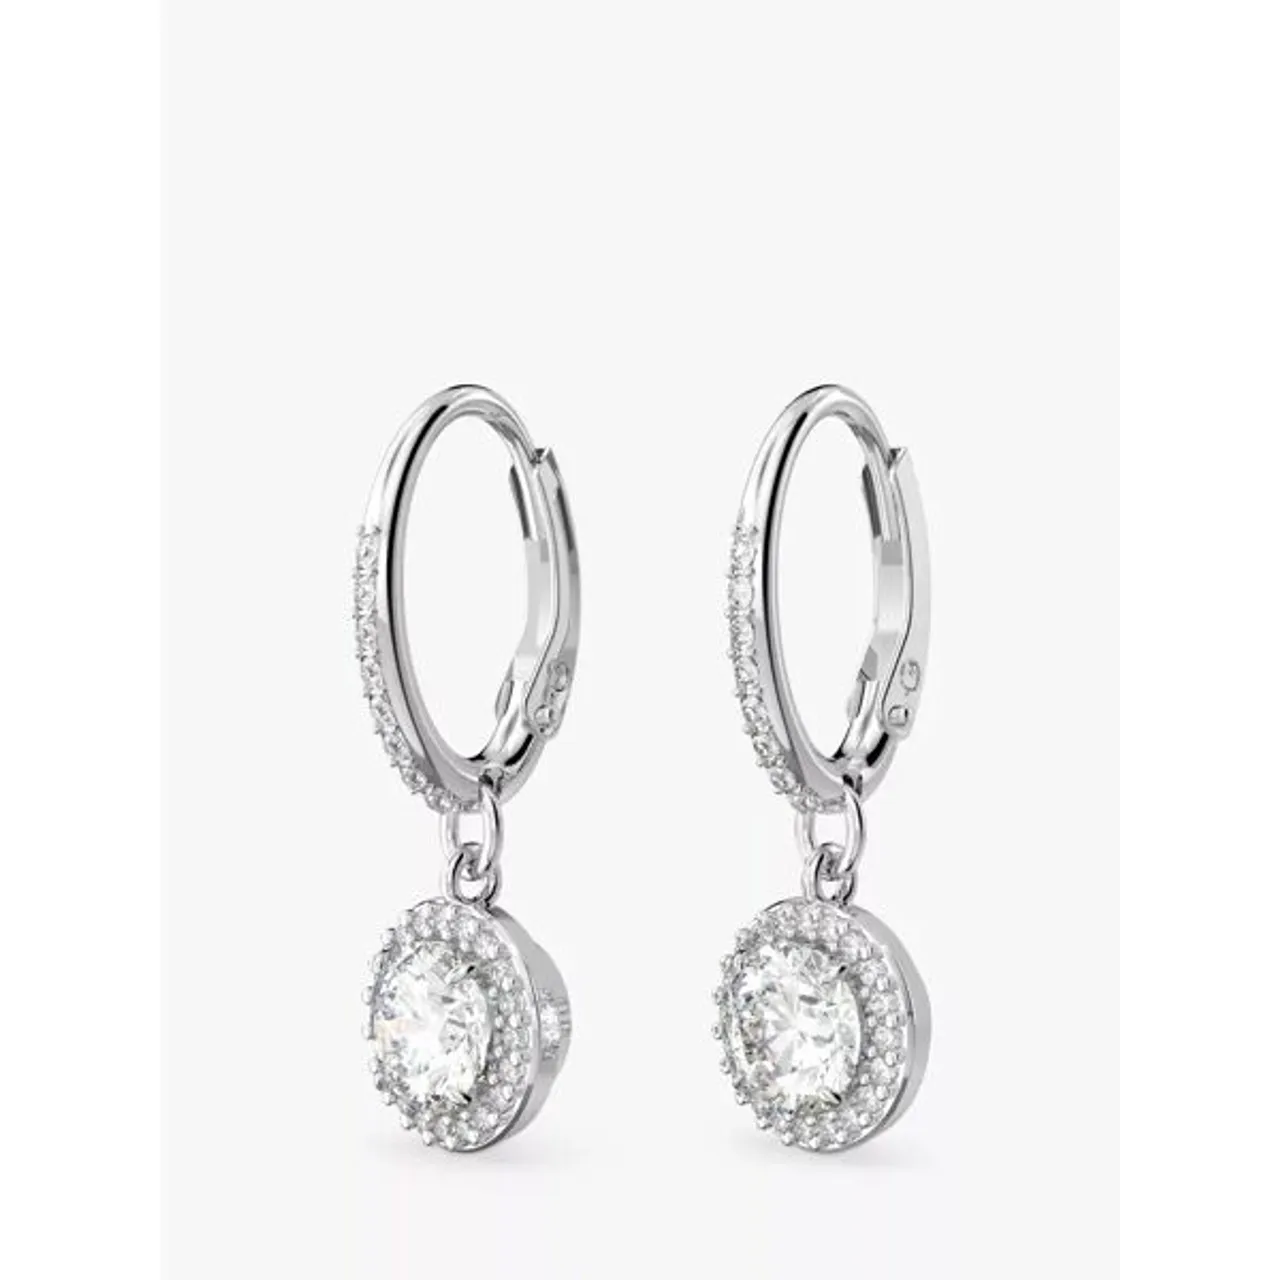 Swarovski Constella Round Crystal Hoop Earrings, Silver - Silver - Female